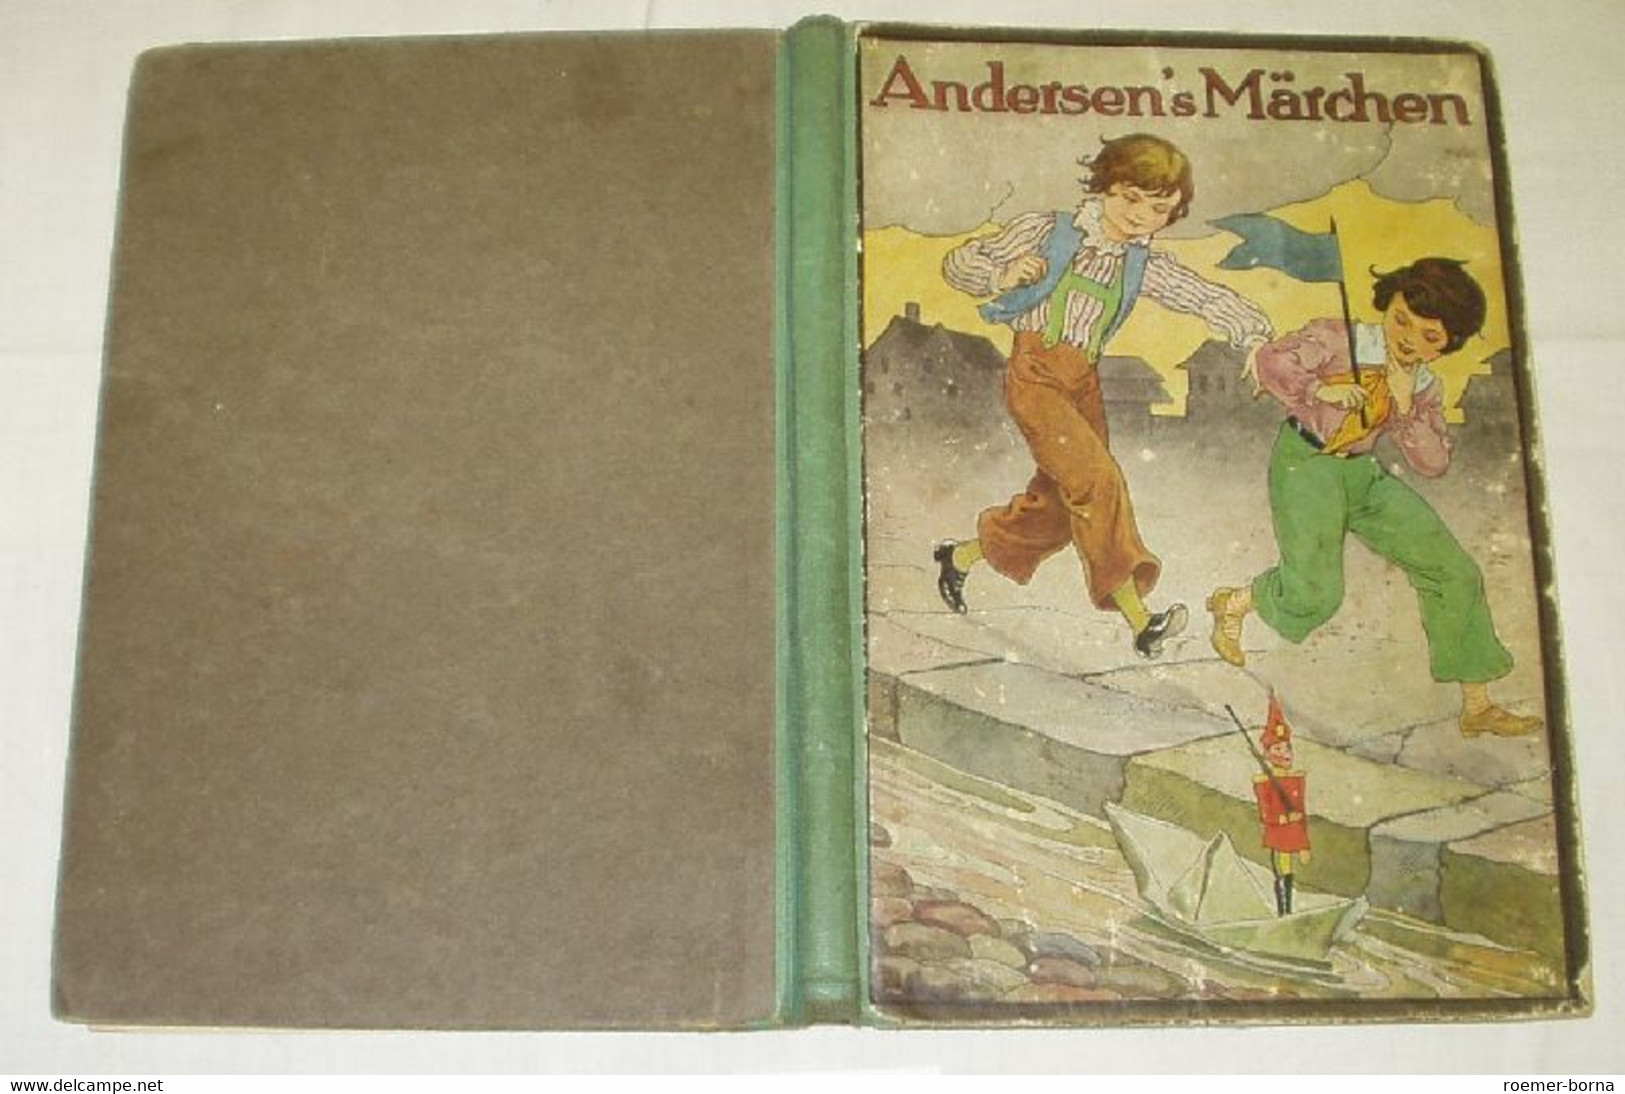 Andersen's Märchen - Tales